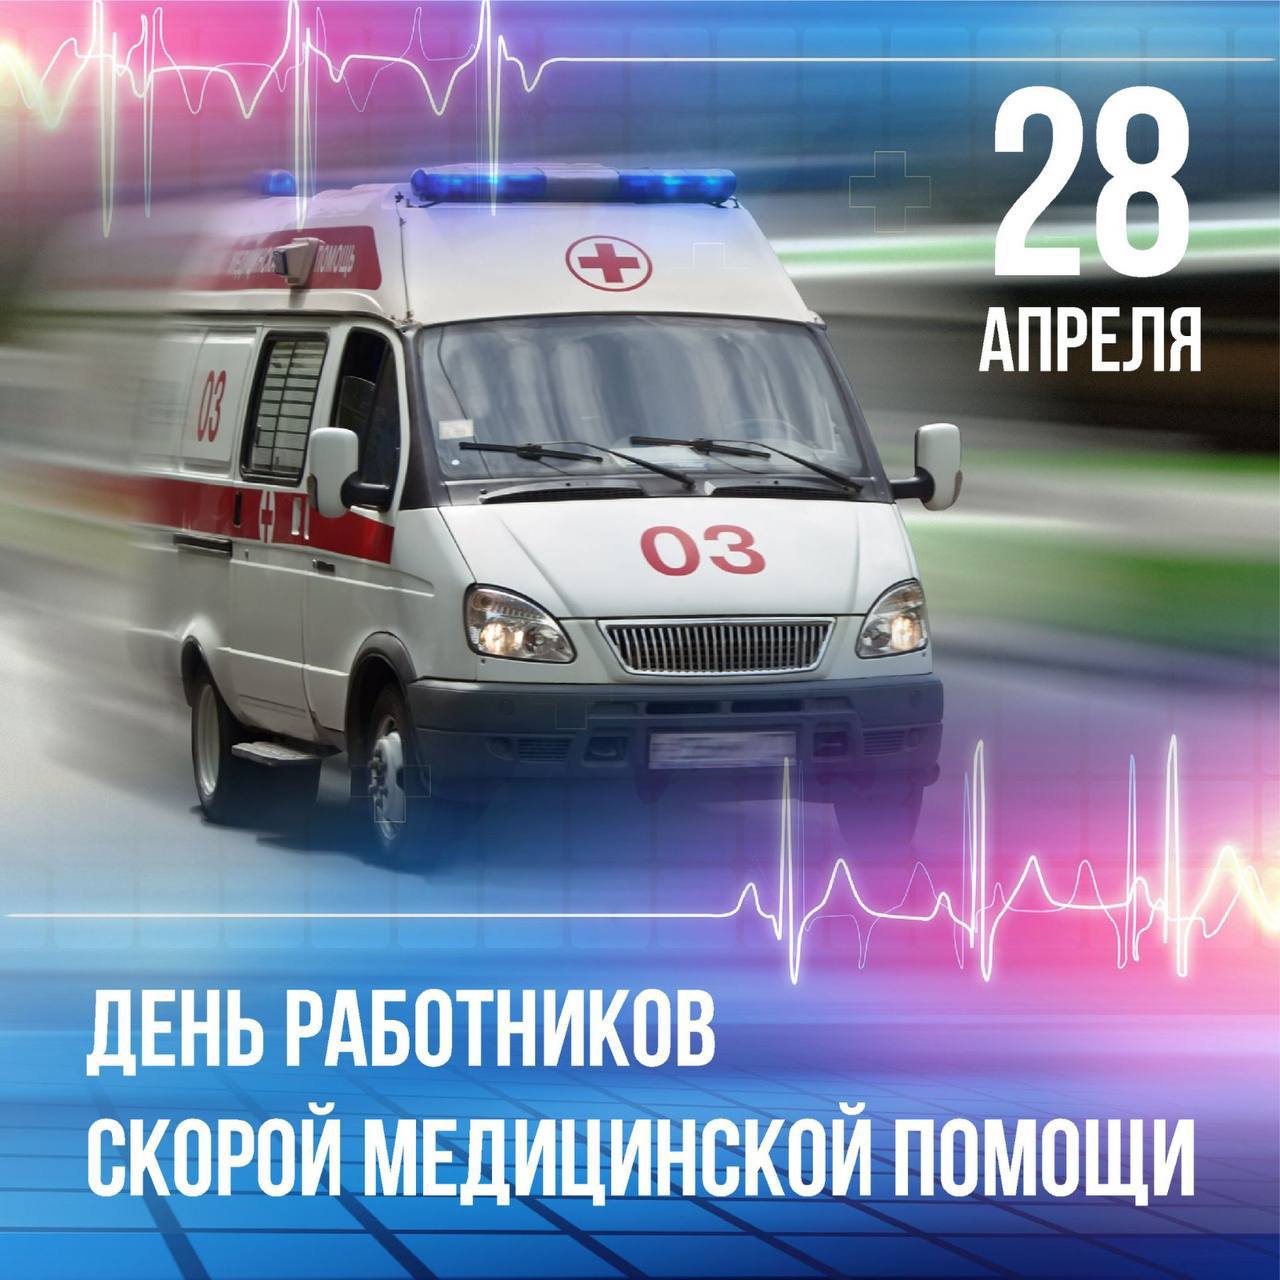 Вениамин Кондратьев поздравил работников скорой помощи с профессиональным праздником